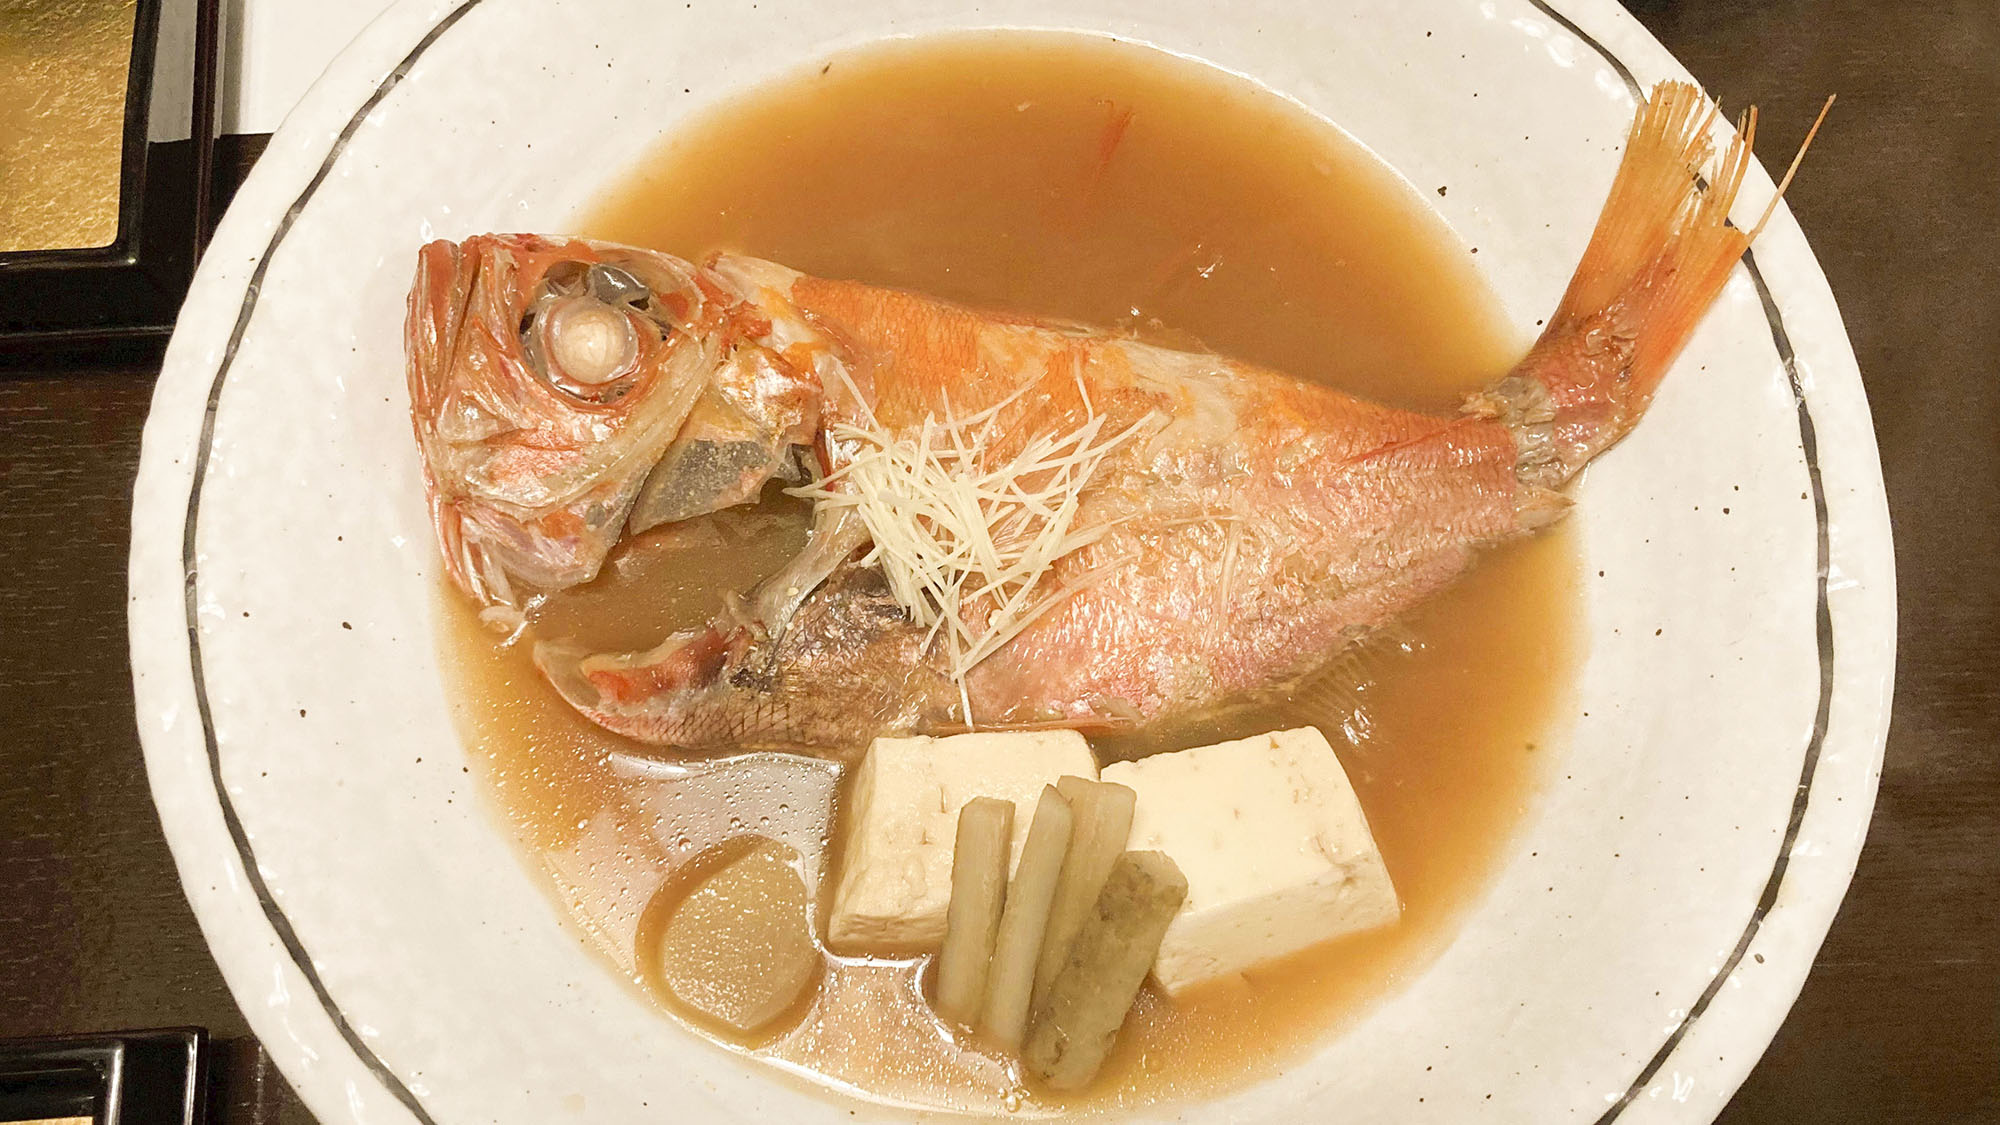 ・【食事】当館自慢の金目鯛の煮付けをお楽しみください